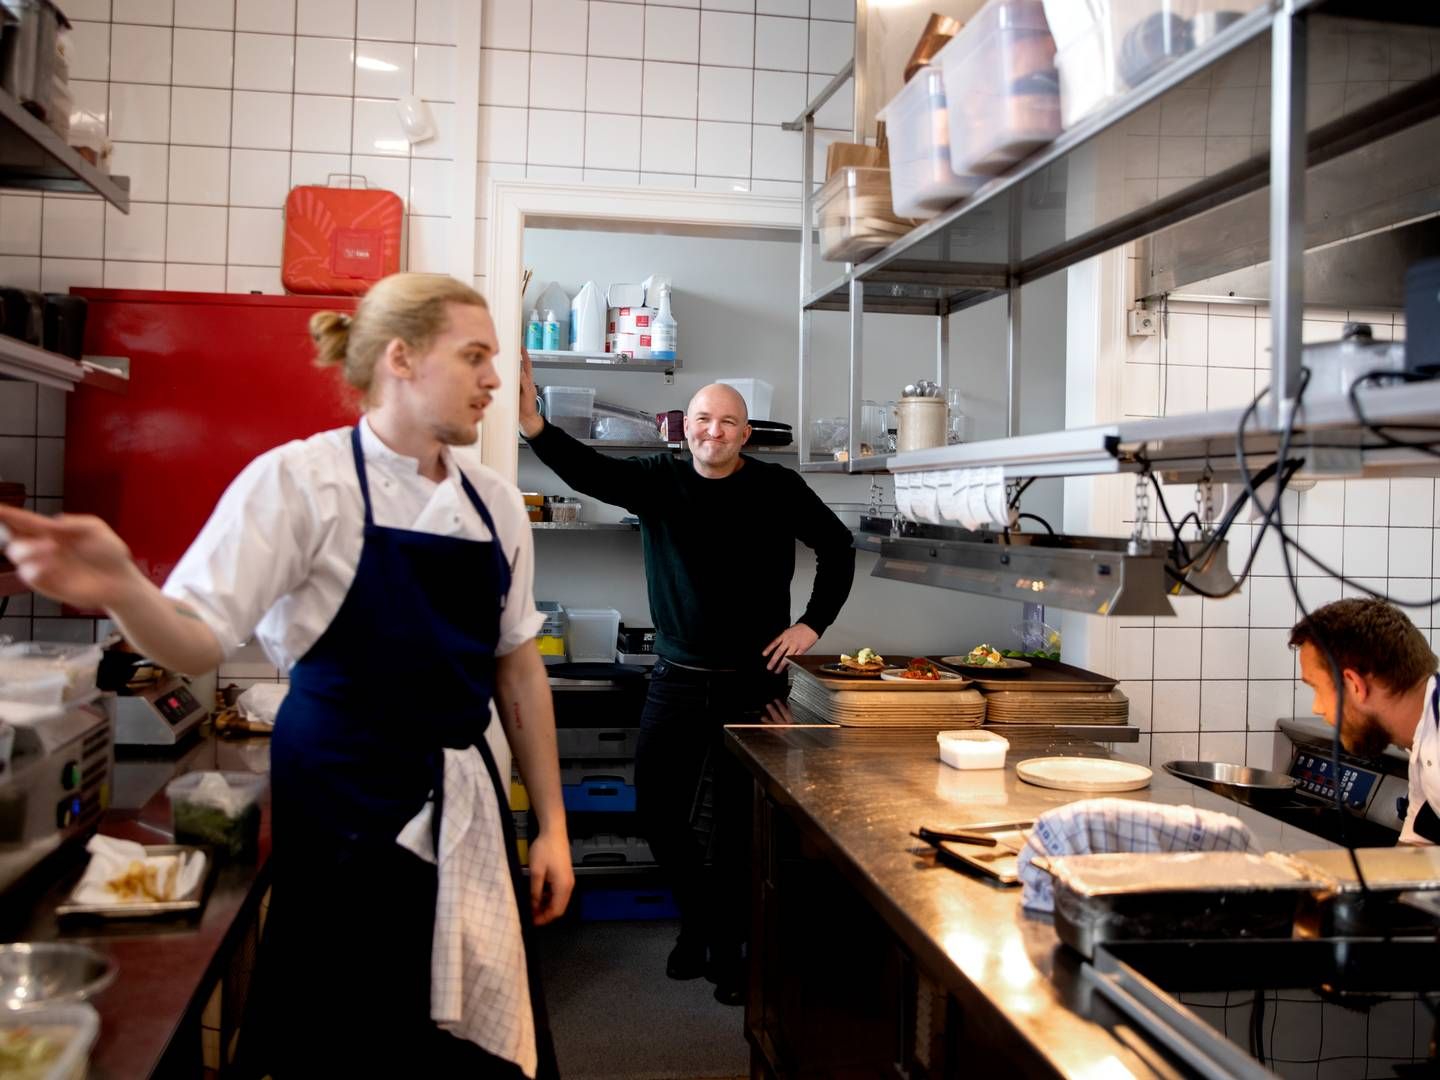 ”Folk venter nok med at købe nyt køkken, men teater, biograf, få en drink eller gå ud at spise, det fortsætter stadigvæk. Det er klart det, folk vil prioritere. Det at gå ud og spise og mødes over et måltid mad er blevet naturligt. Så vores forhåbning er helt klart, at det er noget, folk ønsker fremover også,” udtaler stifter af Madklubben, Anders Aagaard. | Foto: Finn Frandsen